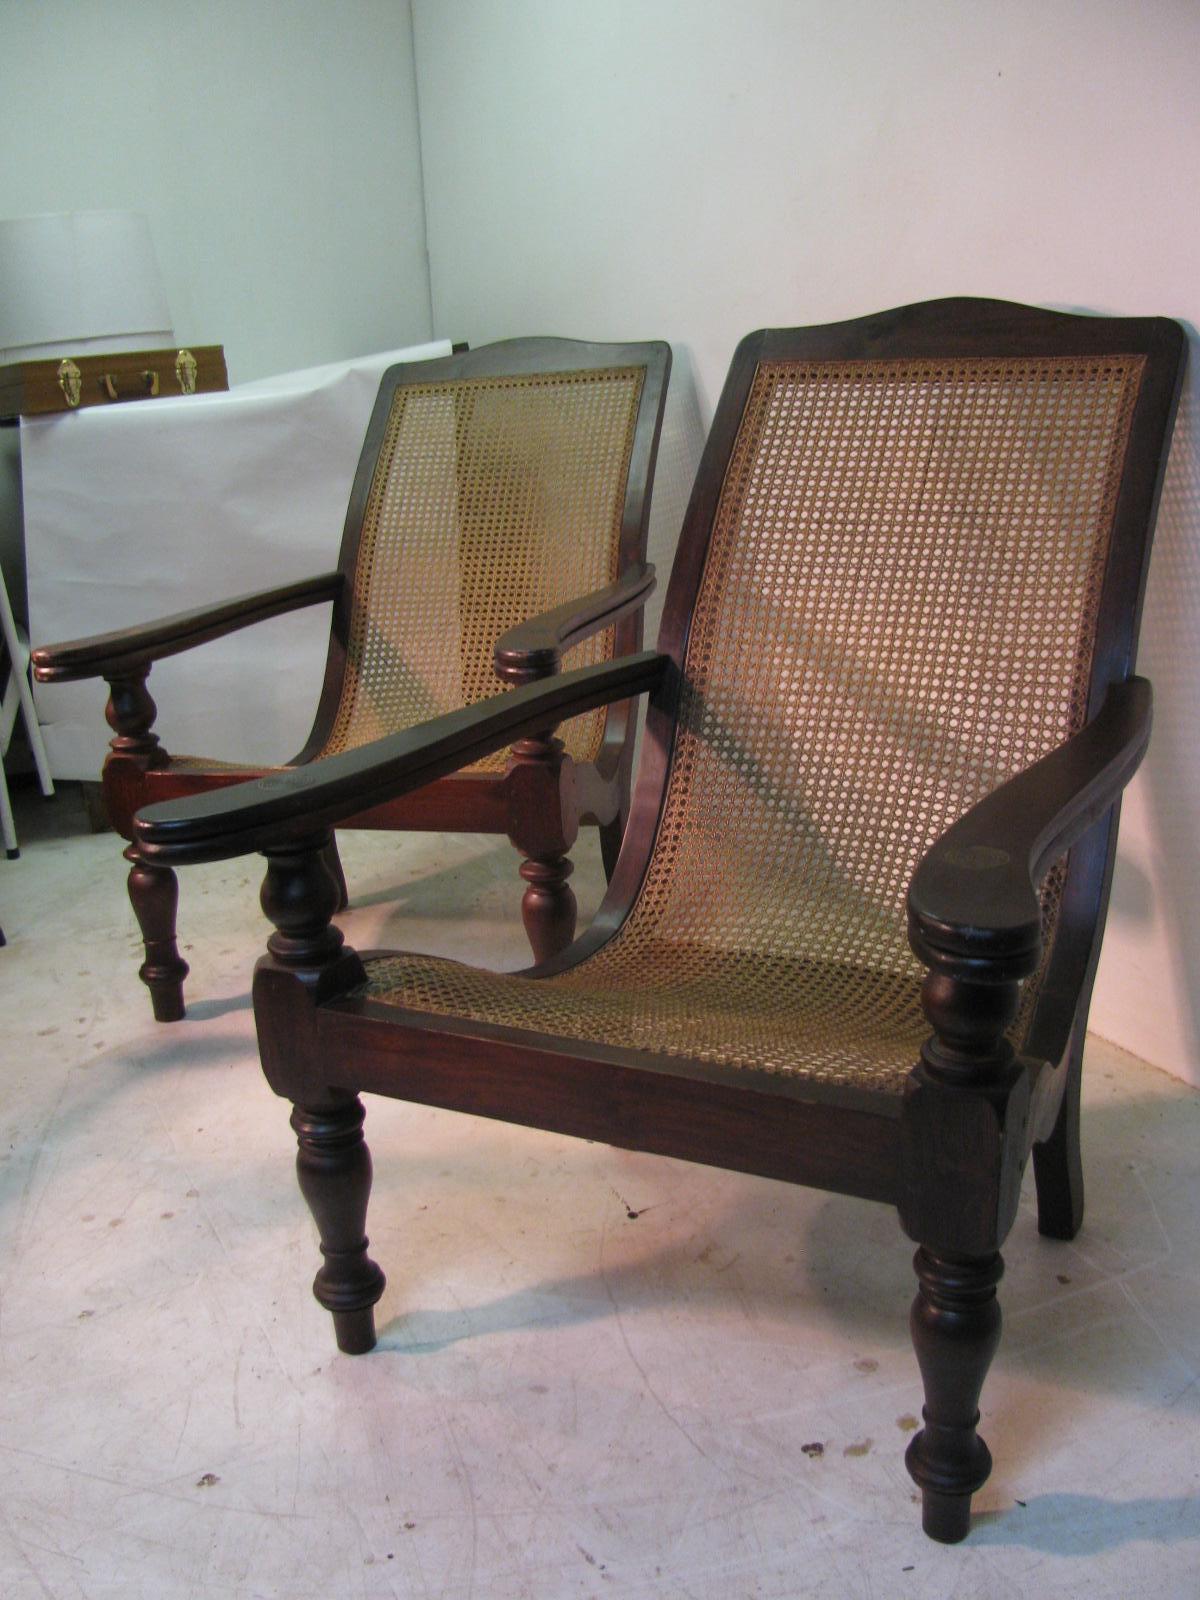 Elegante paire de chaises Plantation, chaises longues ou fauteuils, en bois dur massif et cannage, de l'époque coloniale britannique. Les chaises sont équipées d'accoudoirs pivotants. La construction est faite à la main avec des pieds tournés, une